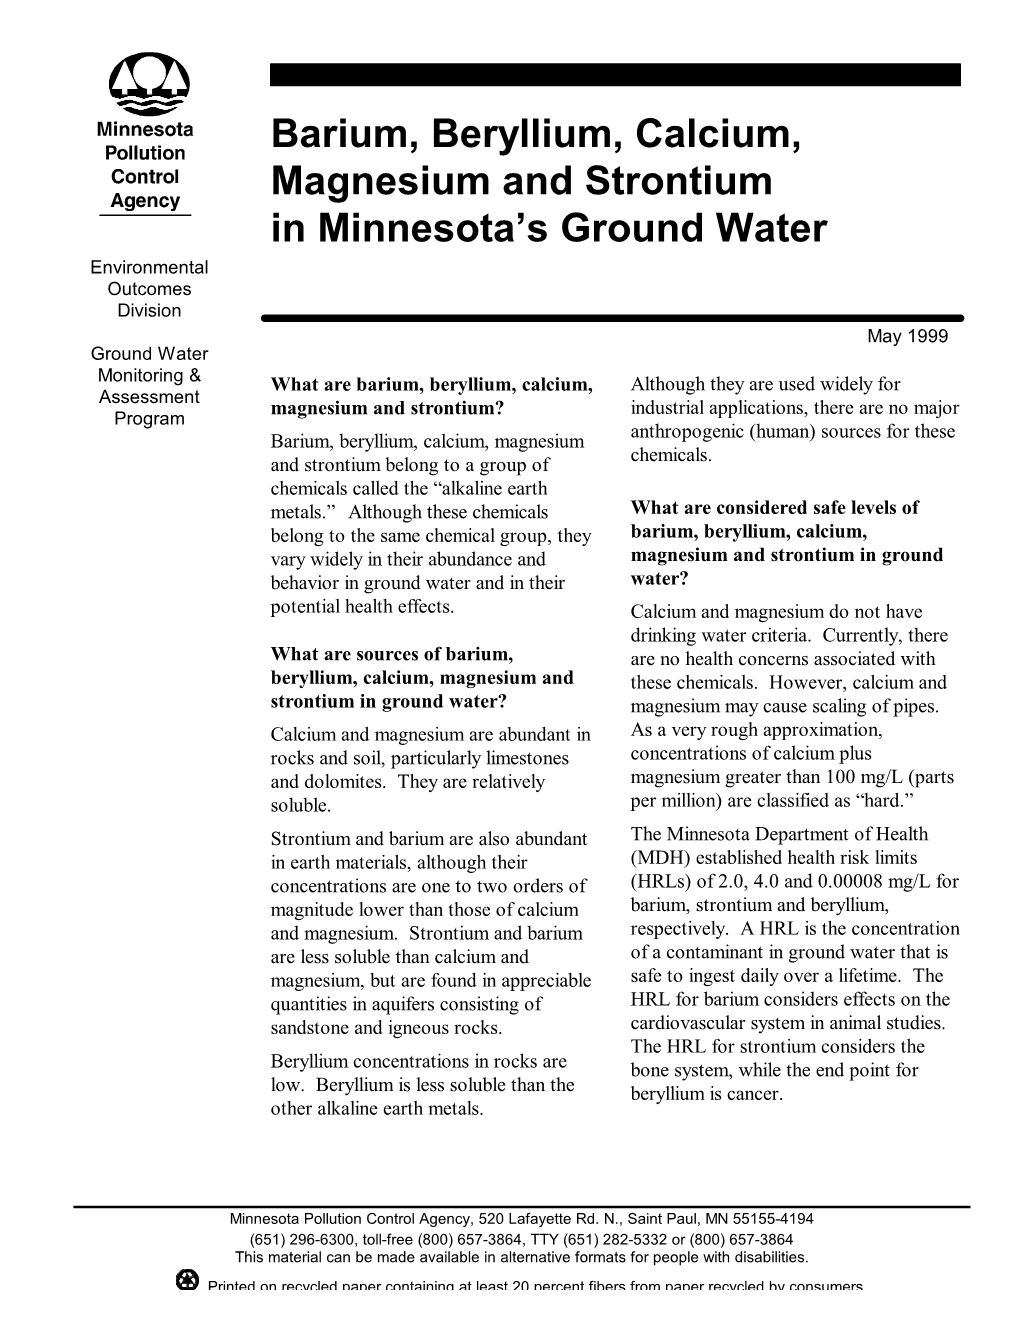 Barium, Beryllium, Calcium, Magnesium and Strontium In